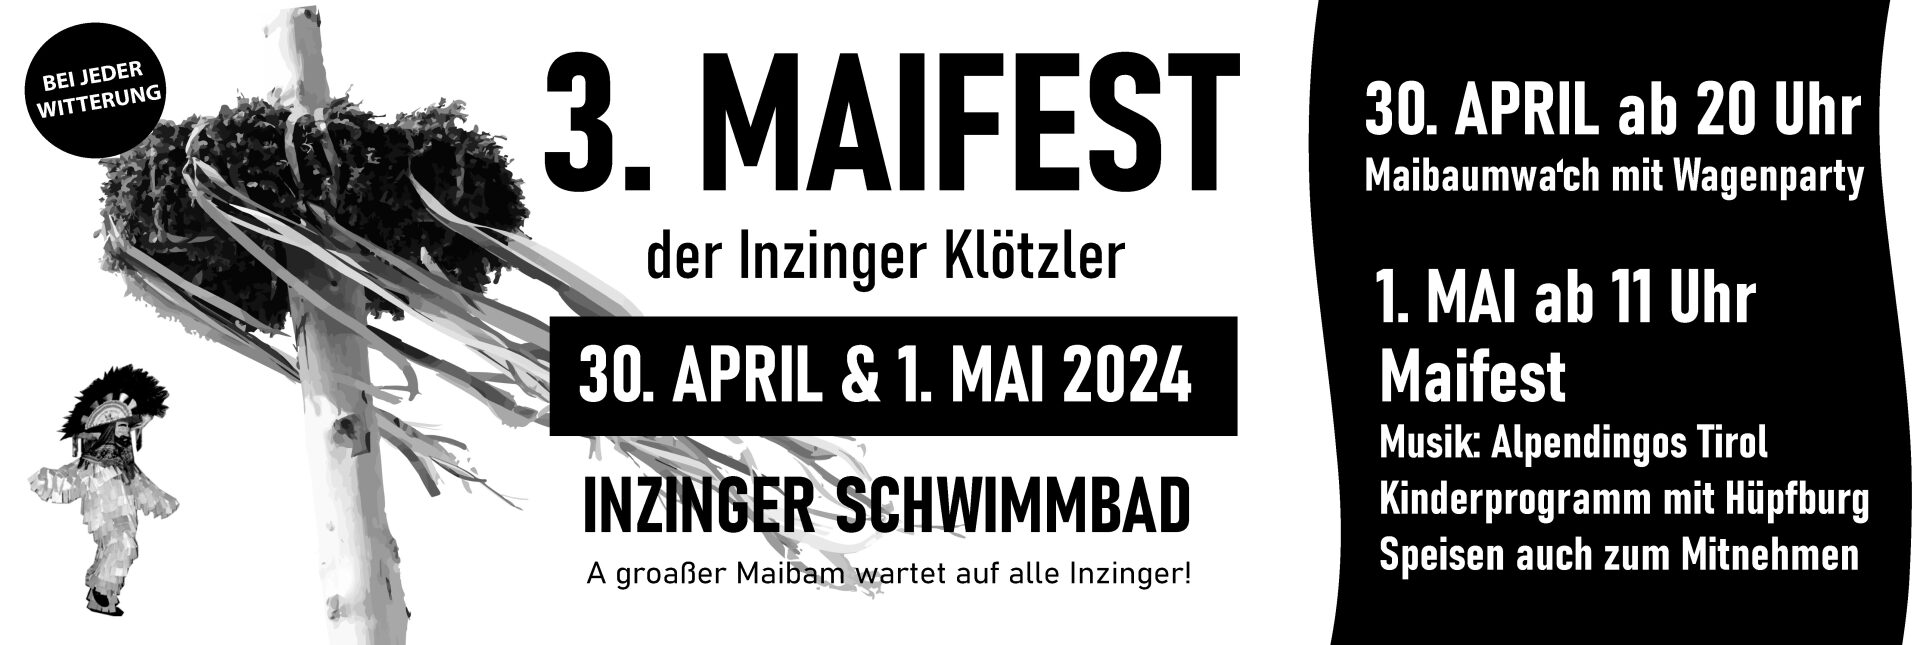 Plakat zum Maifest